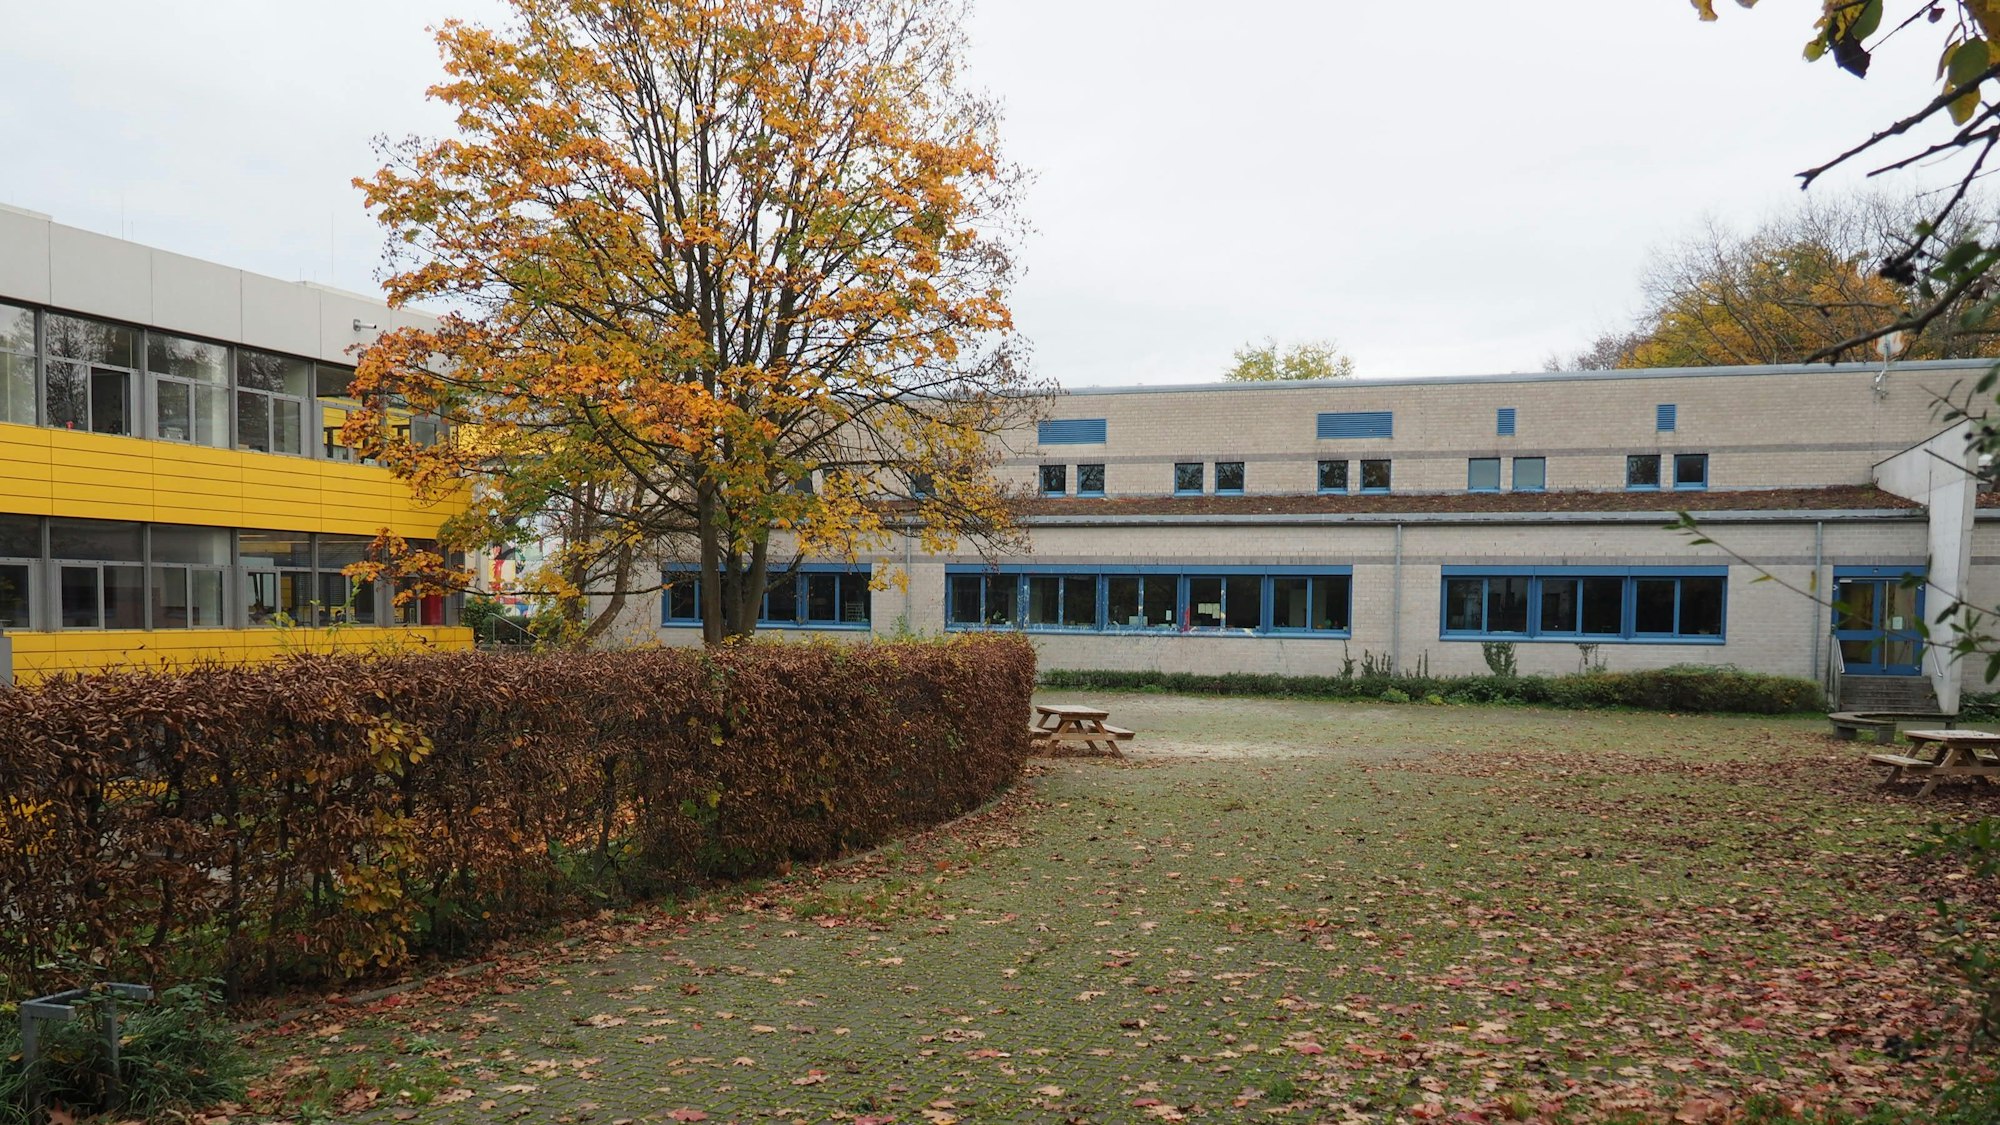 Man sieht einen leeren Schulhof mit einem Baum und Hecke, im Hintergrund das Schulgebäude.